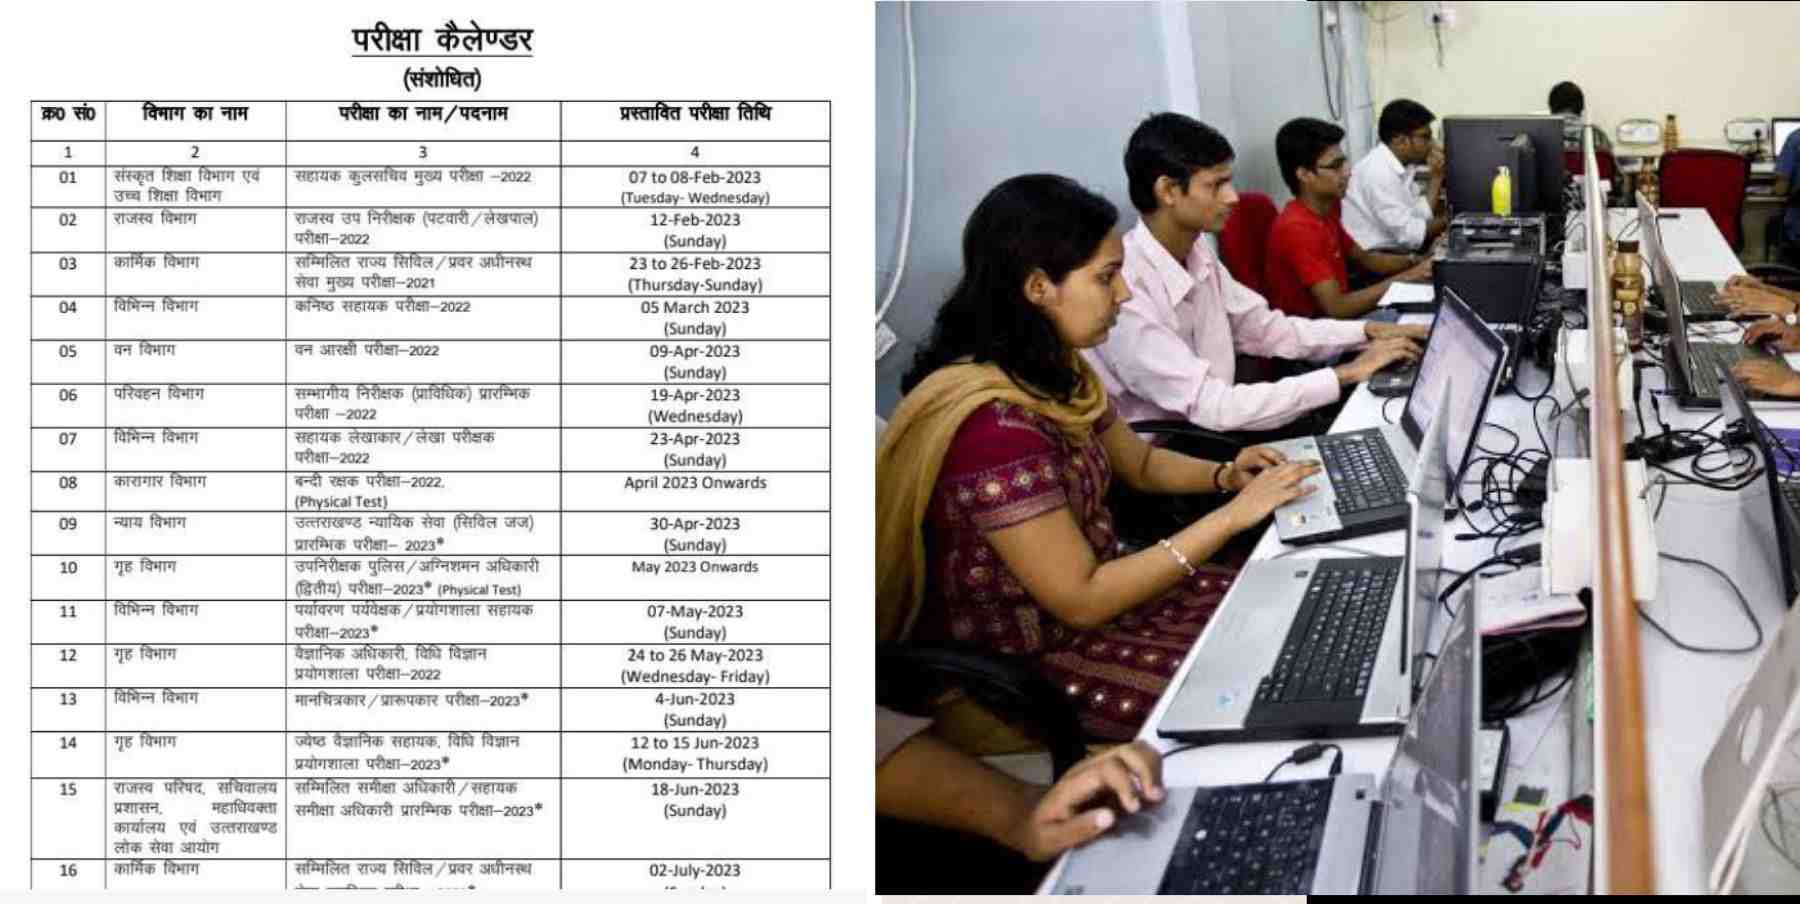 Uttarakhand news: UKPSC released calendar for 32 recruitment exam for the year 2023. UKPSC Exam Calendar 2023